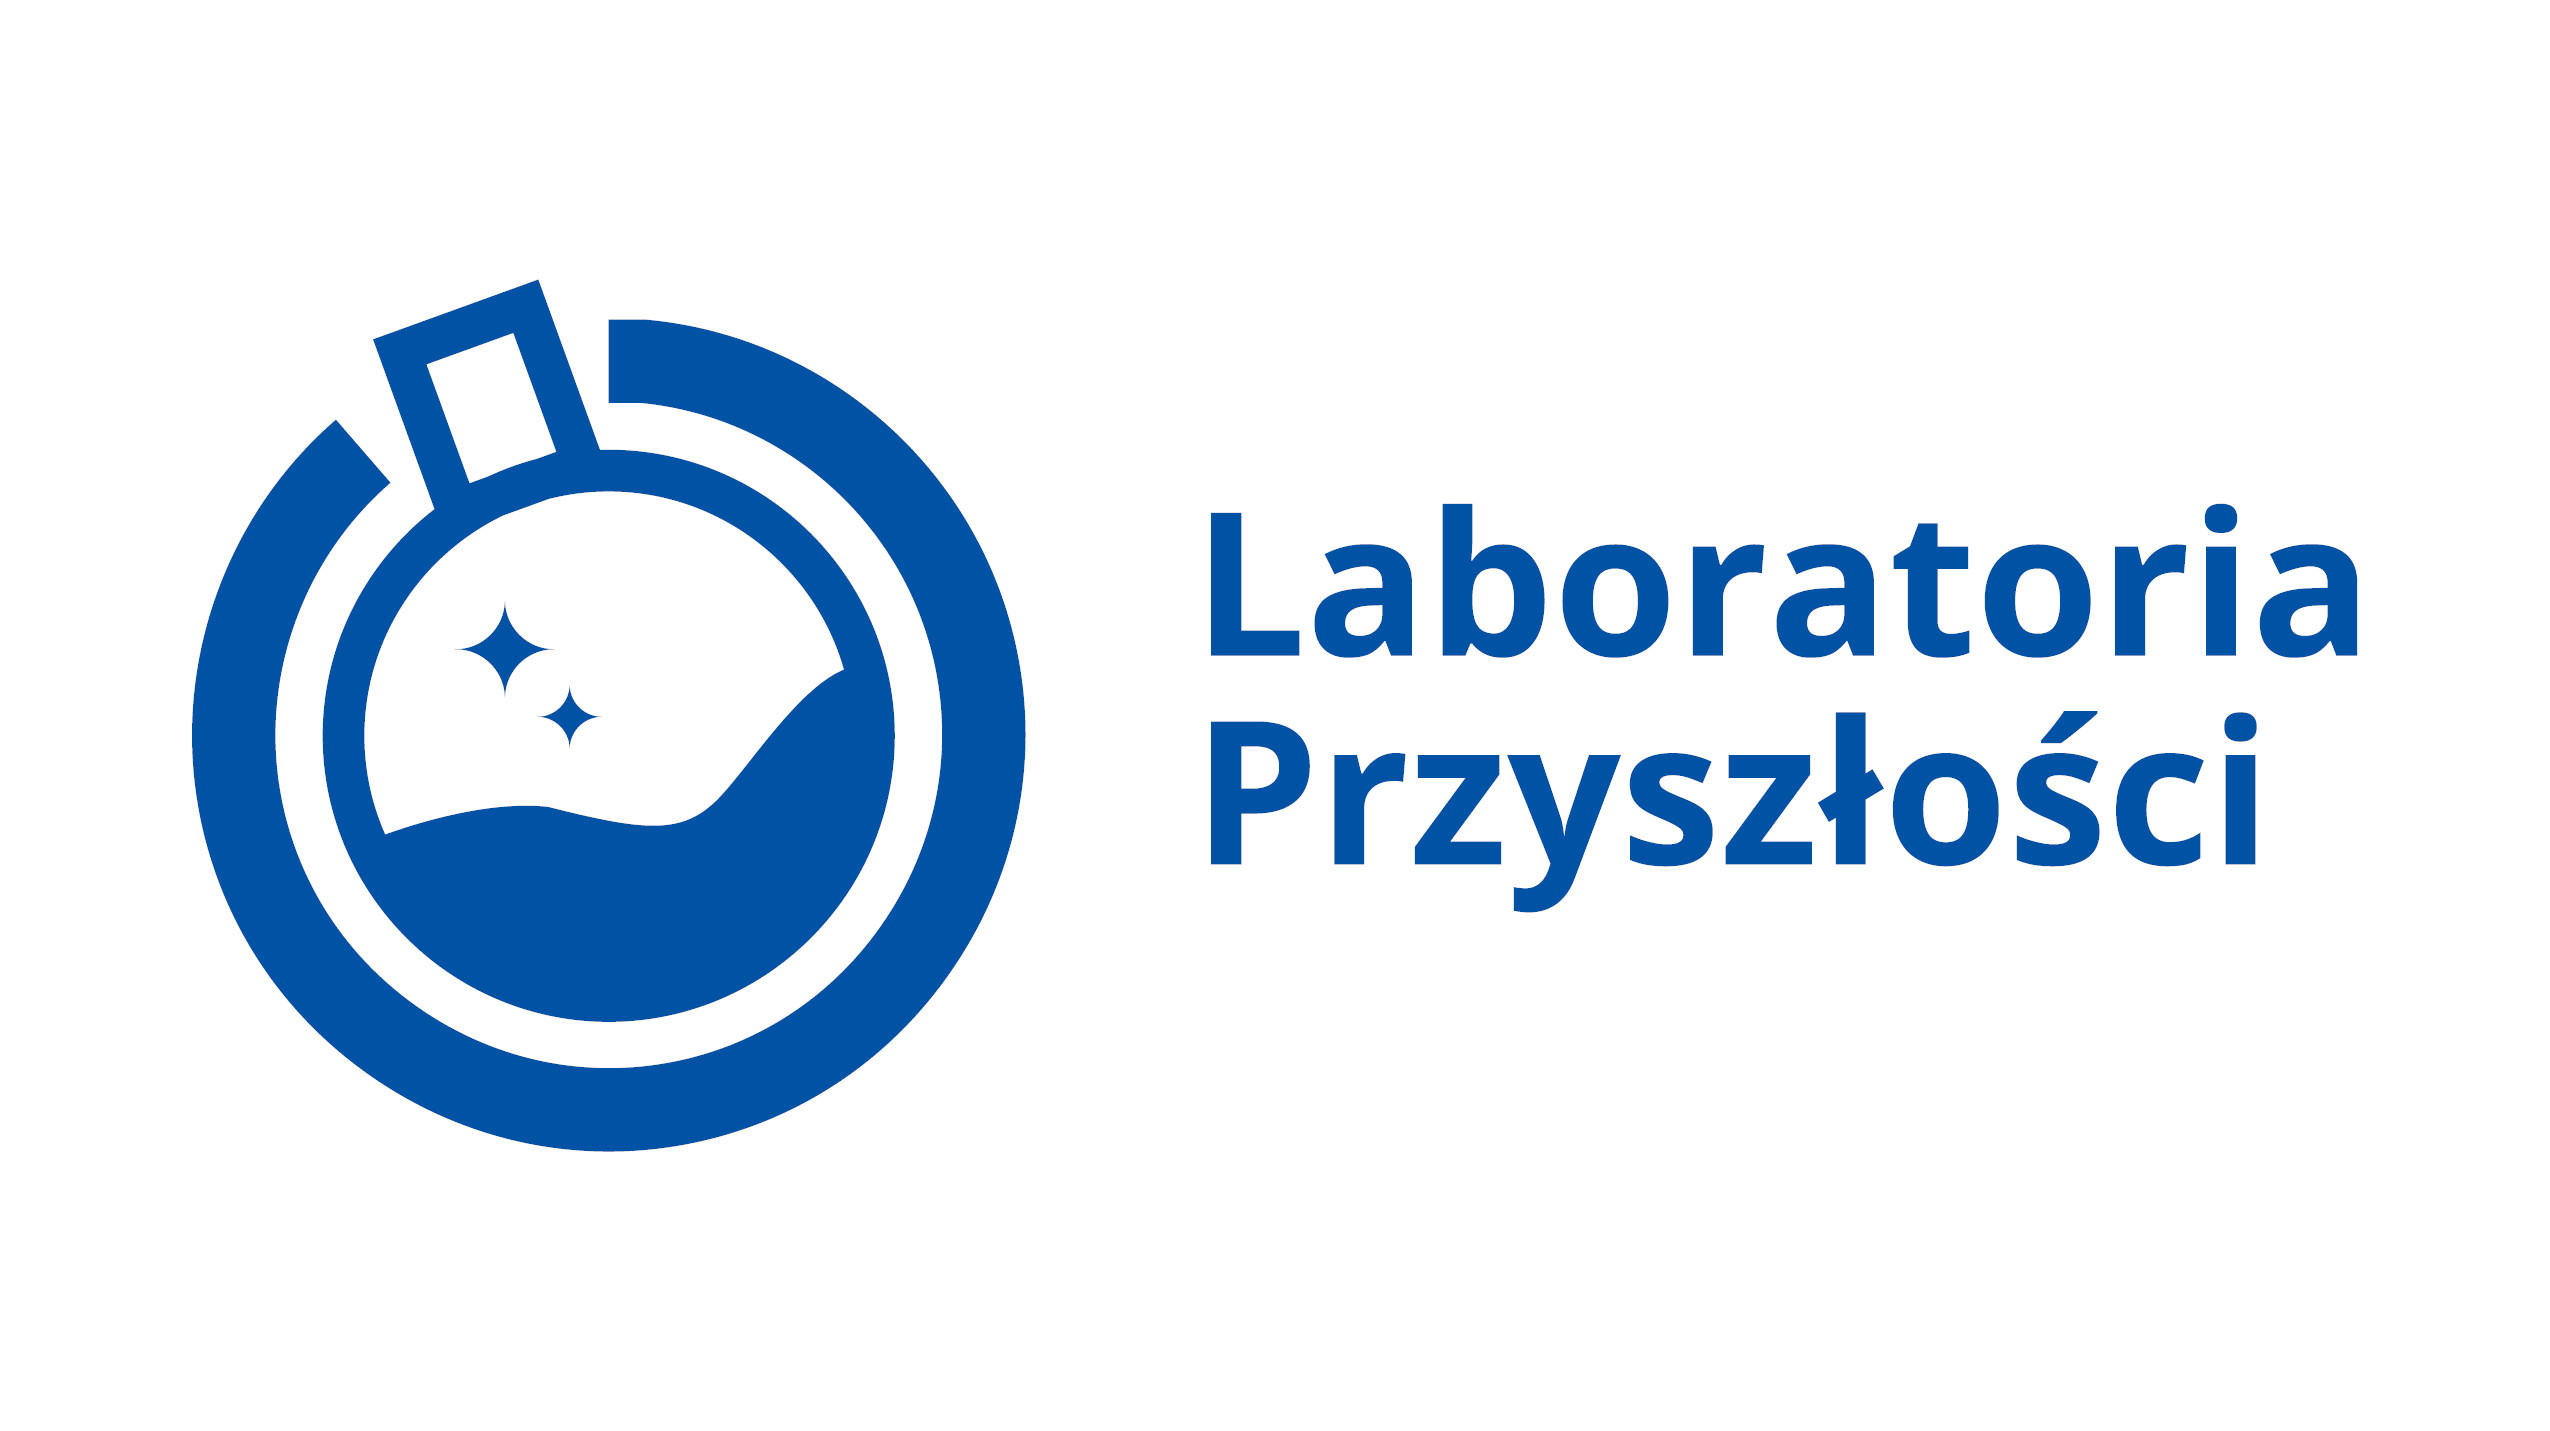 Logo programu laboratoria przyszłości - niebieska próbówka - poniżej napis Laboratorium przyszłości